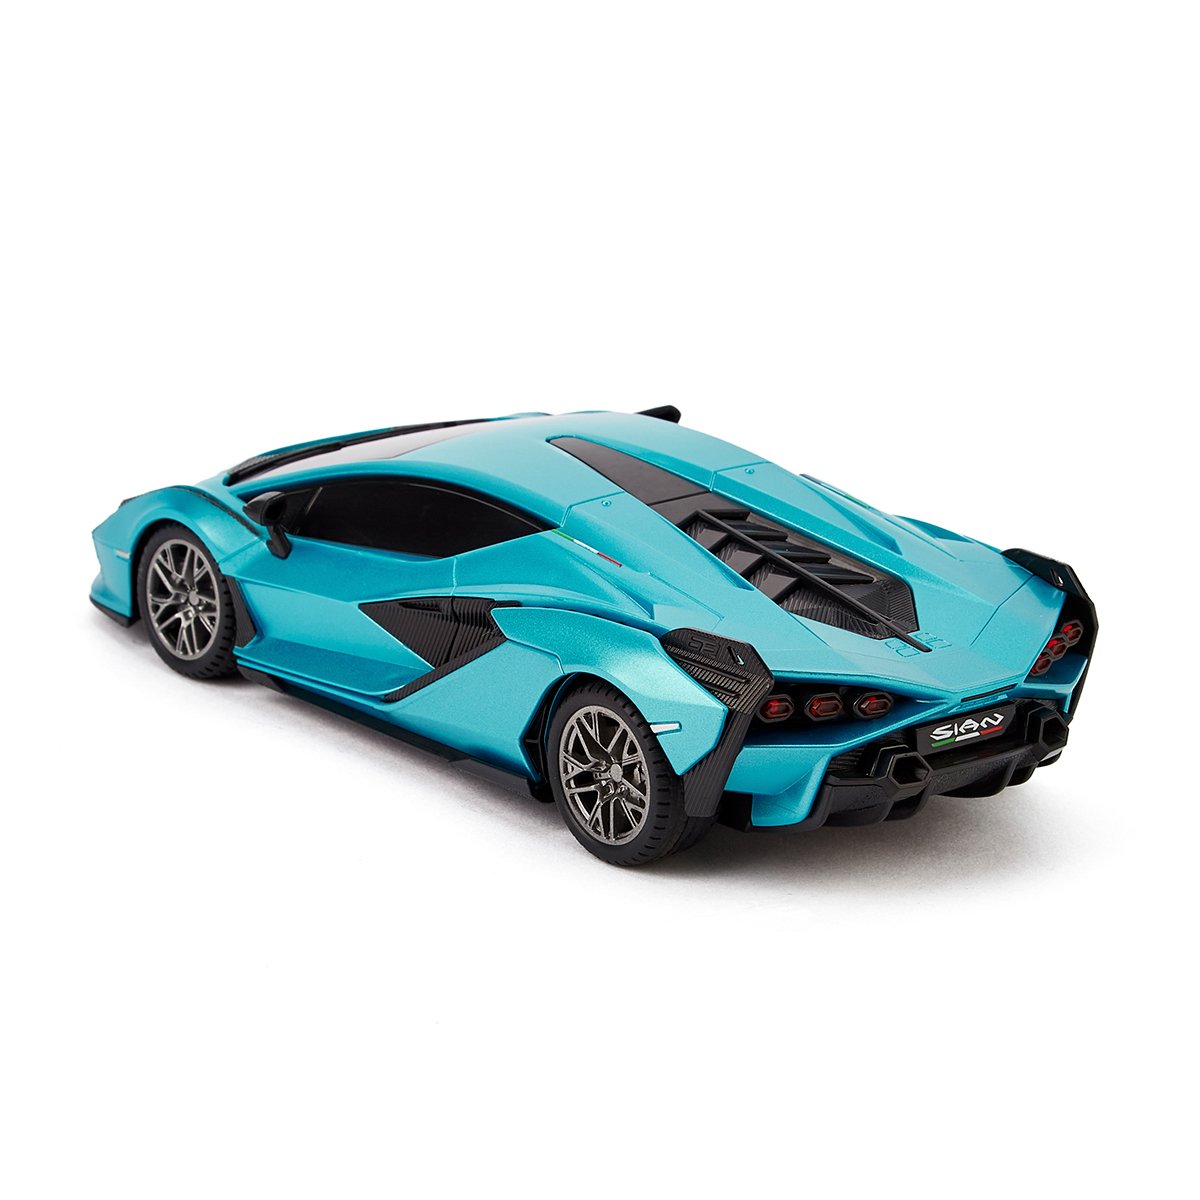 Автомобиль KS Drive на р/у Lamborghini Sian 1:24, 2.4Ghz синий (124GLSB) - фото 5